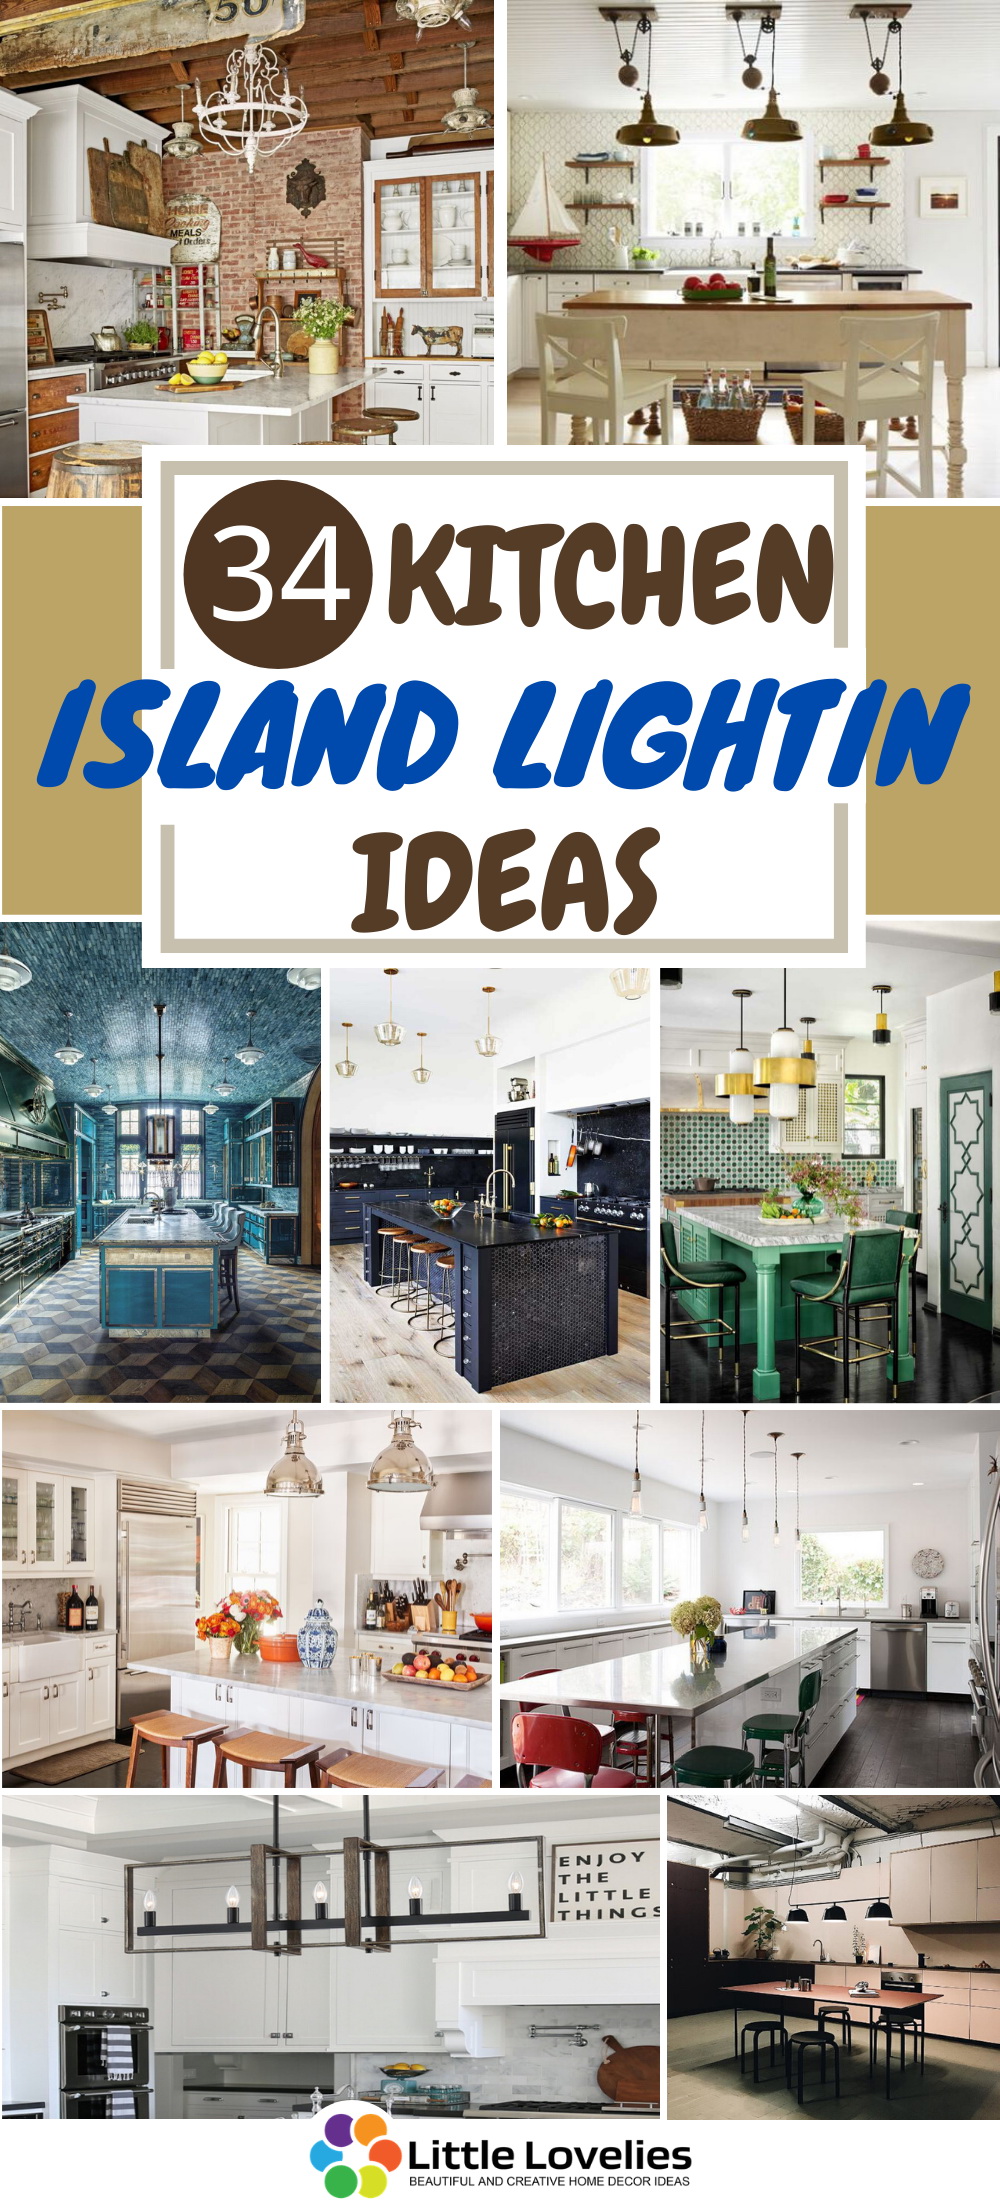 Kitchen Island Lighting ideas